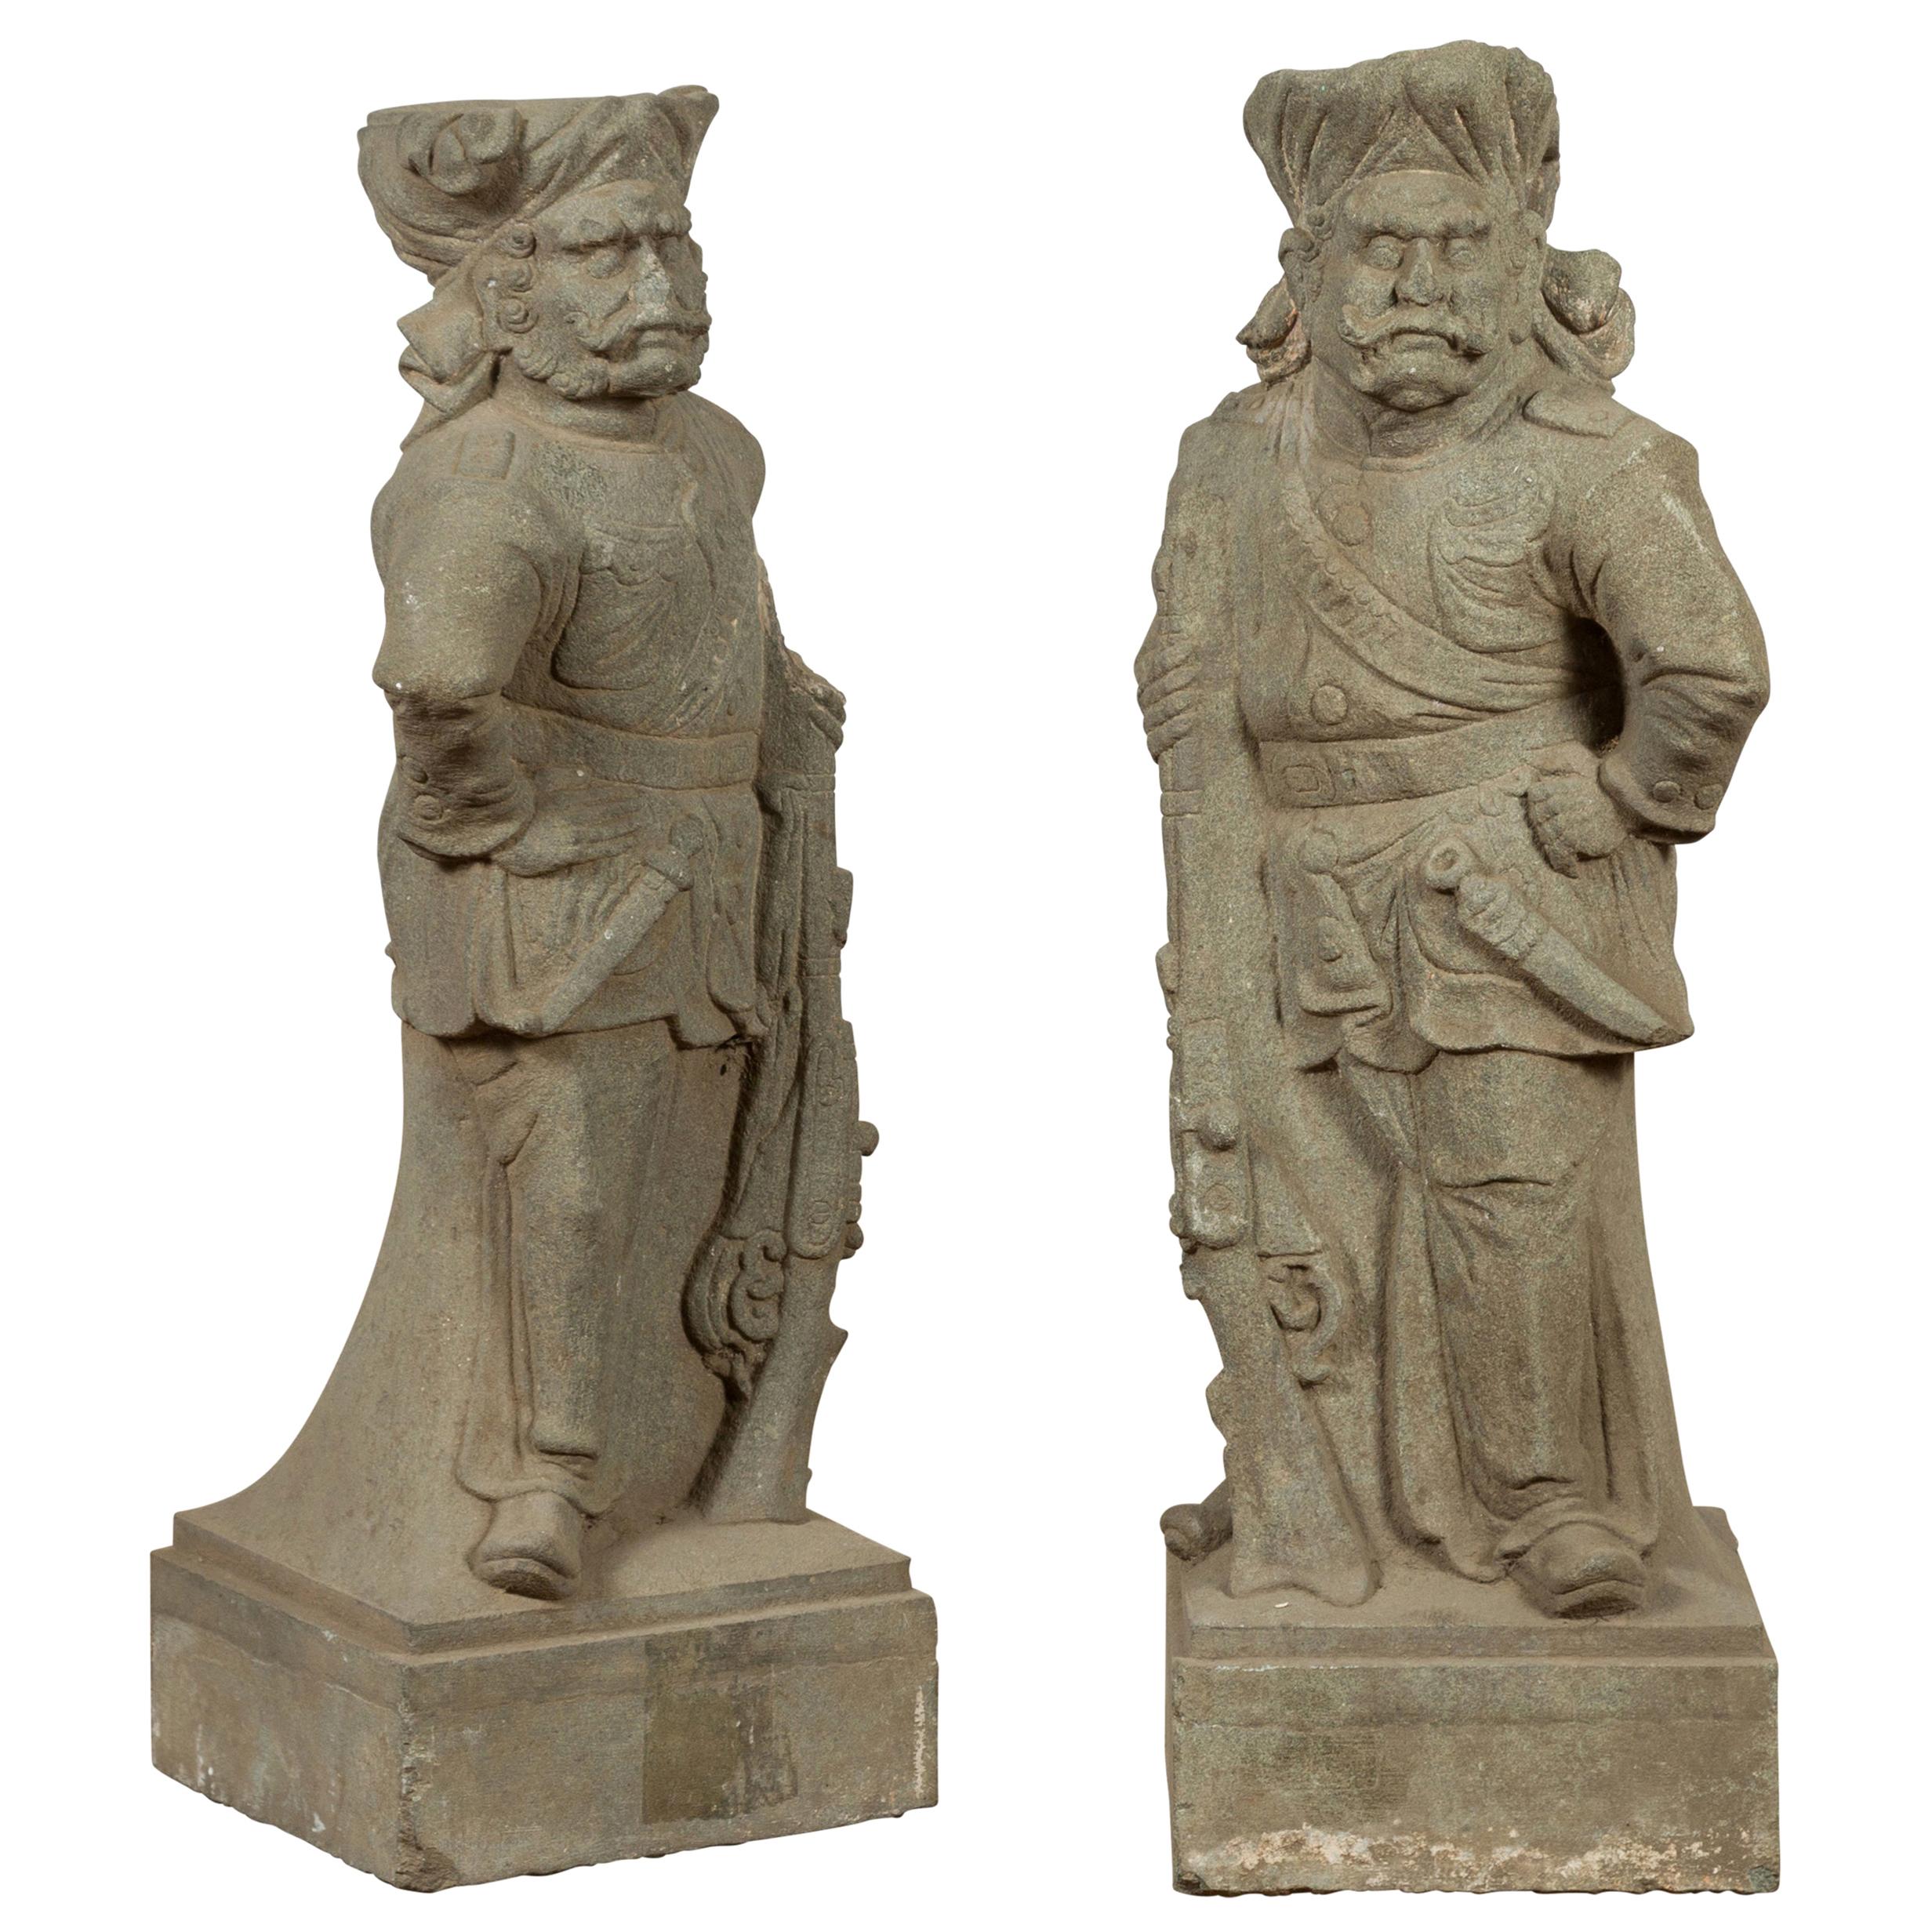 Geschnitzte Steinskulpturen von Soldaten aus der britischen indischen Armee im Vintage-Stil